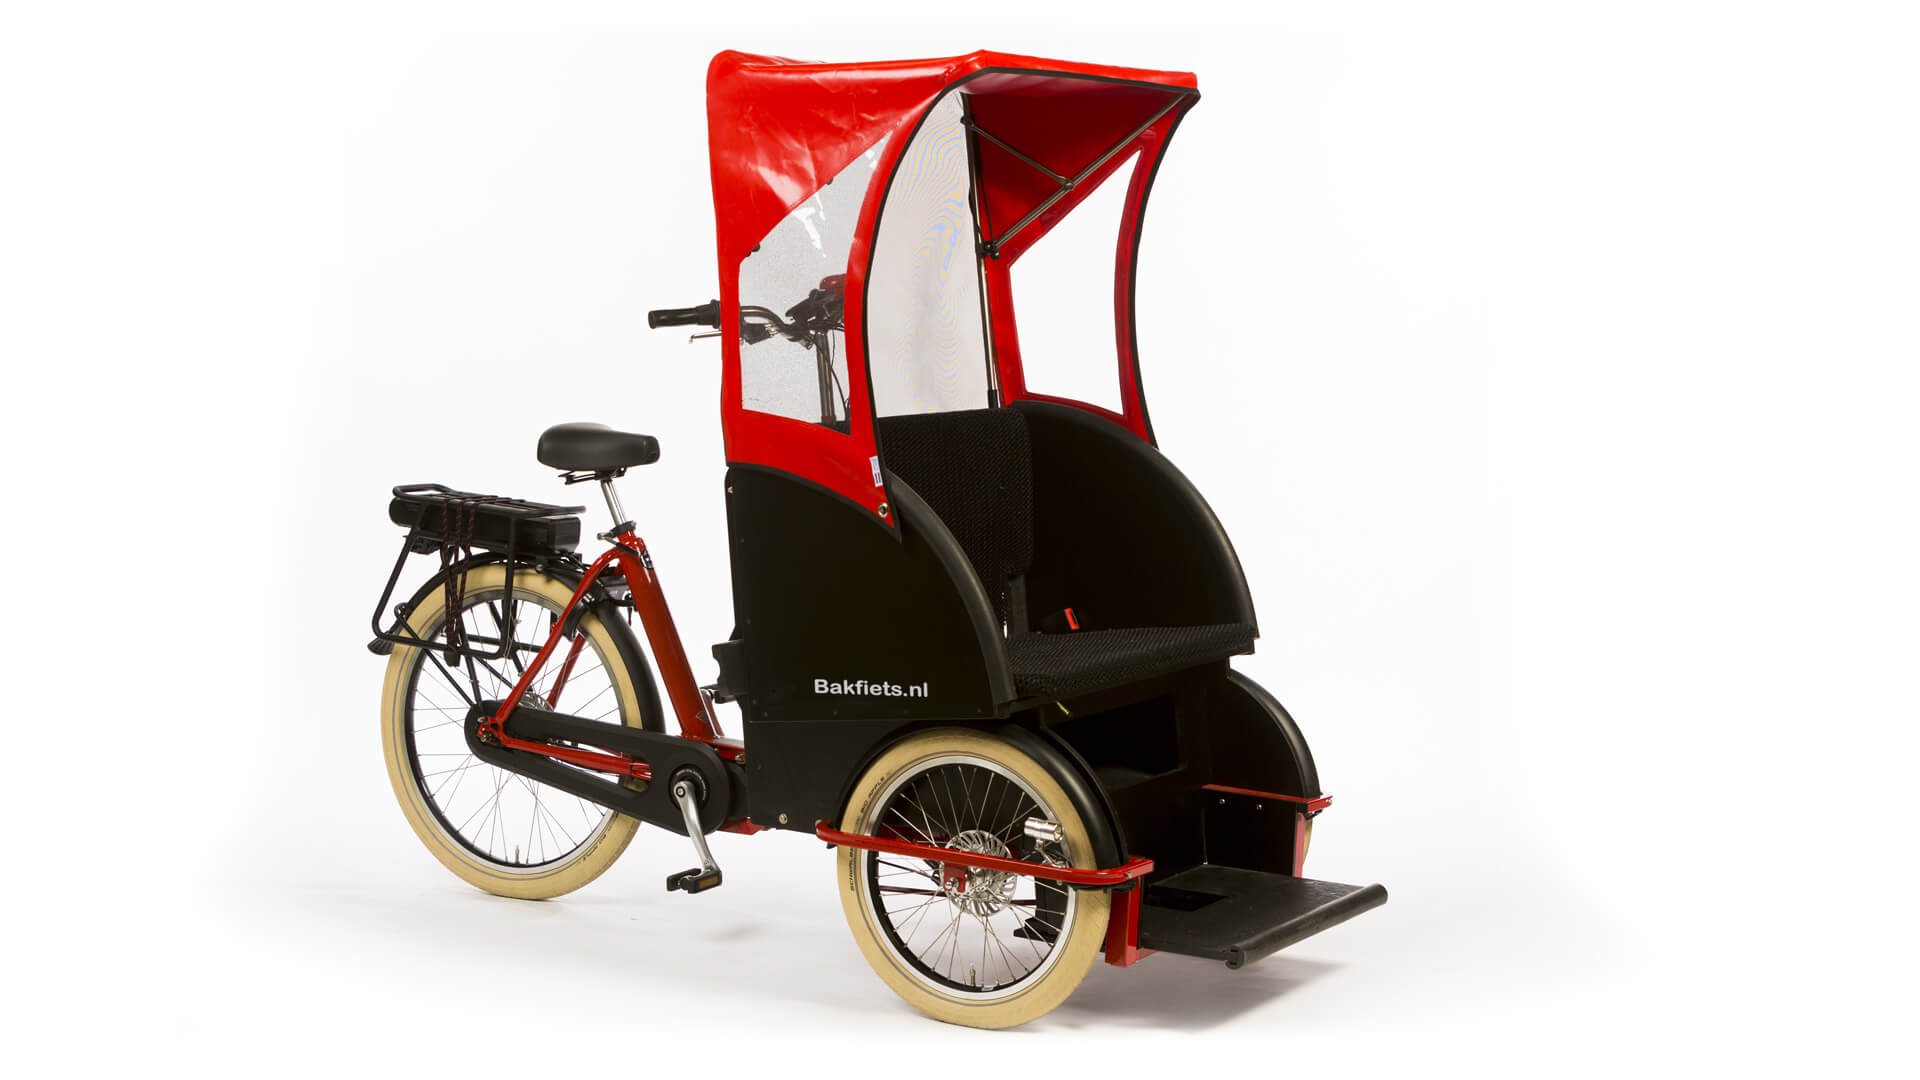 Triporteur transport adulte rickshaw vélo taxi